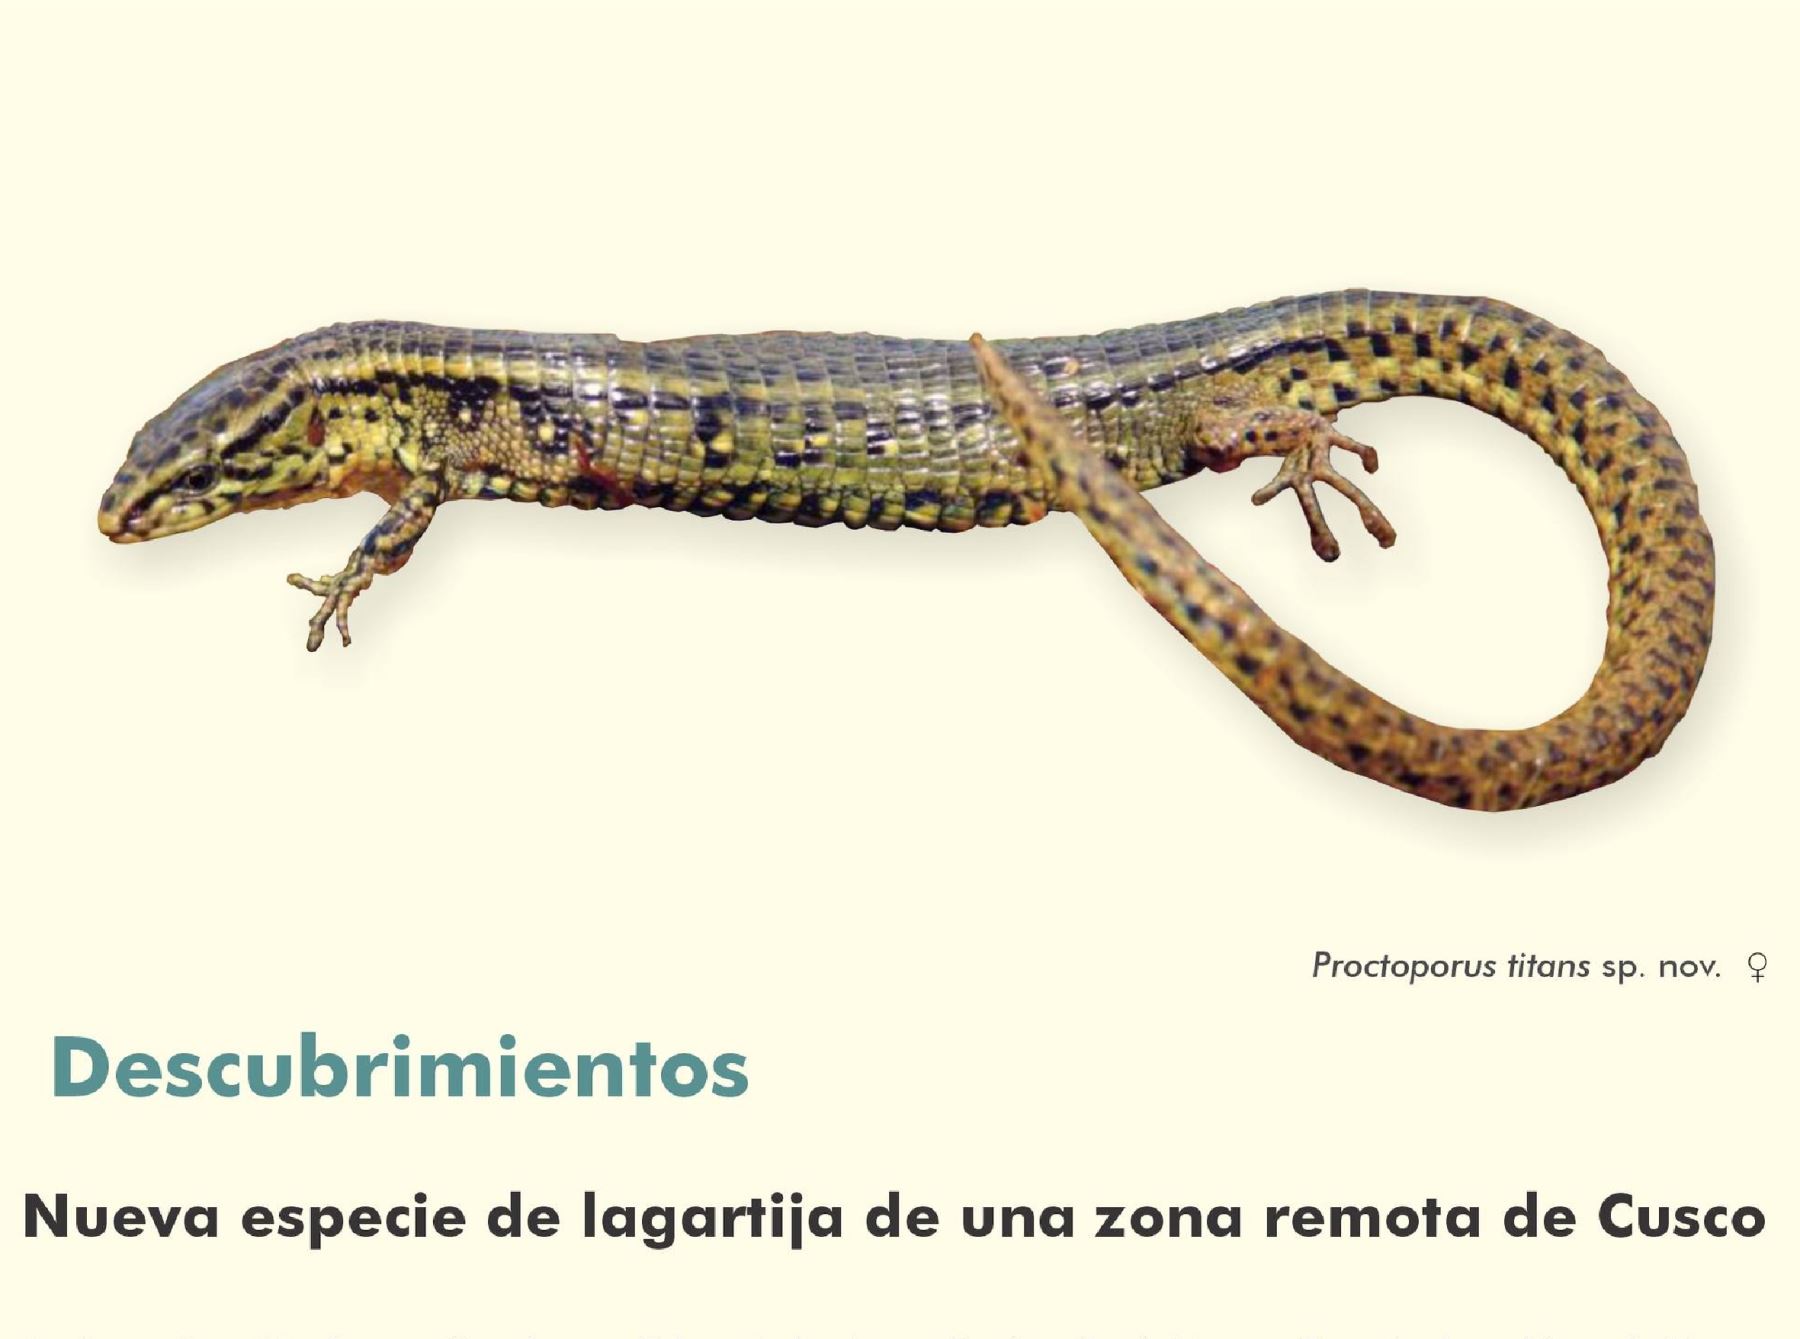 Científicos de la Universidad Nacional Mayor de San Marcos hallaron una nueva especie de lagartija en una zona remota del Parque Nacional Otishi, región Cusco. Foto: ANDINA/difusión.